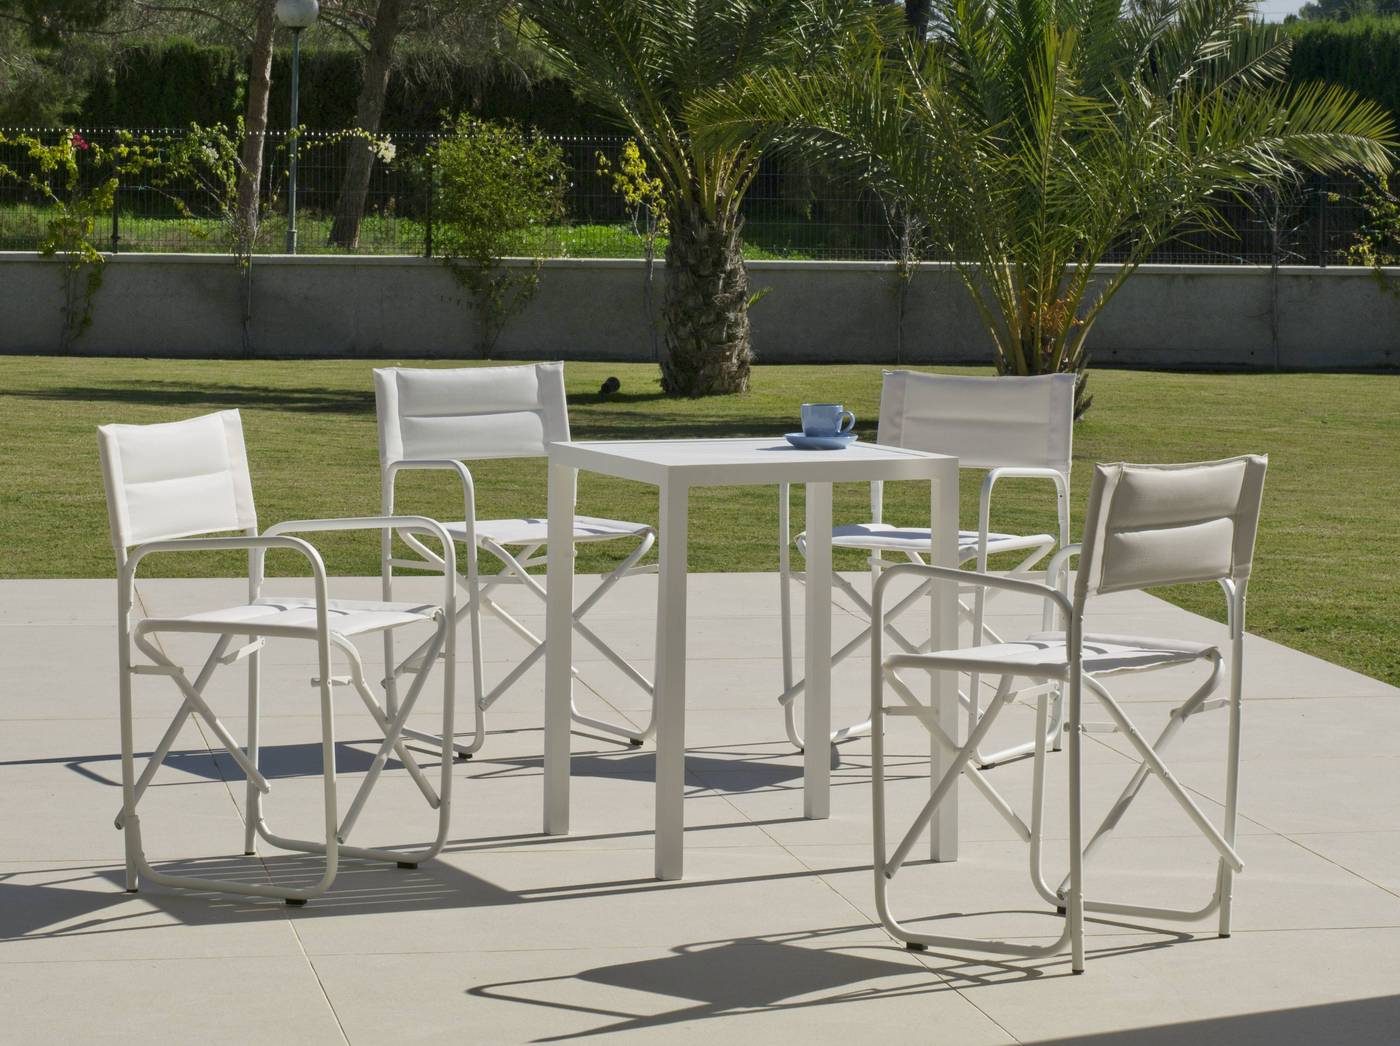 Set Aluminio Melea-Badúa 65-4 - Conjunto aluminio luxe: Mesa cuadrada 65 cm + 4 sillones plegables. Disponible en color blanco o antracita.